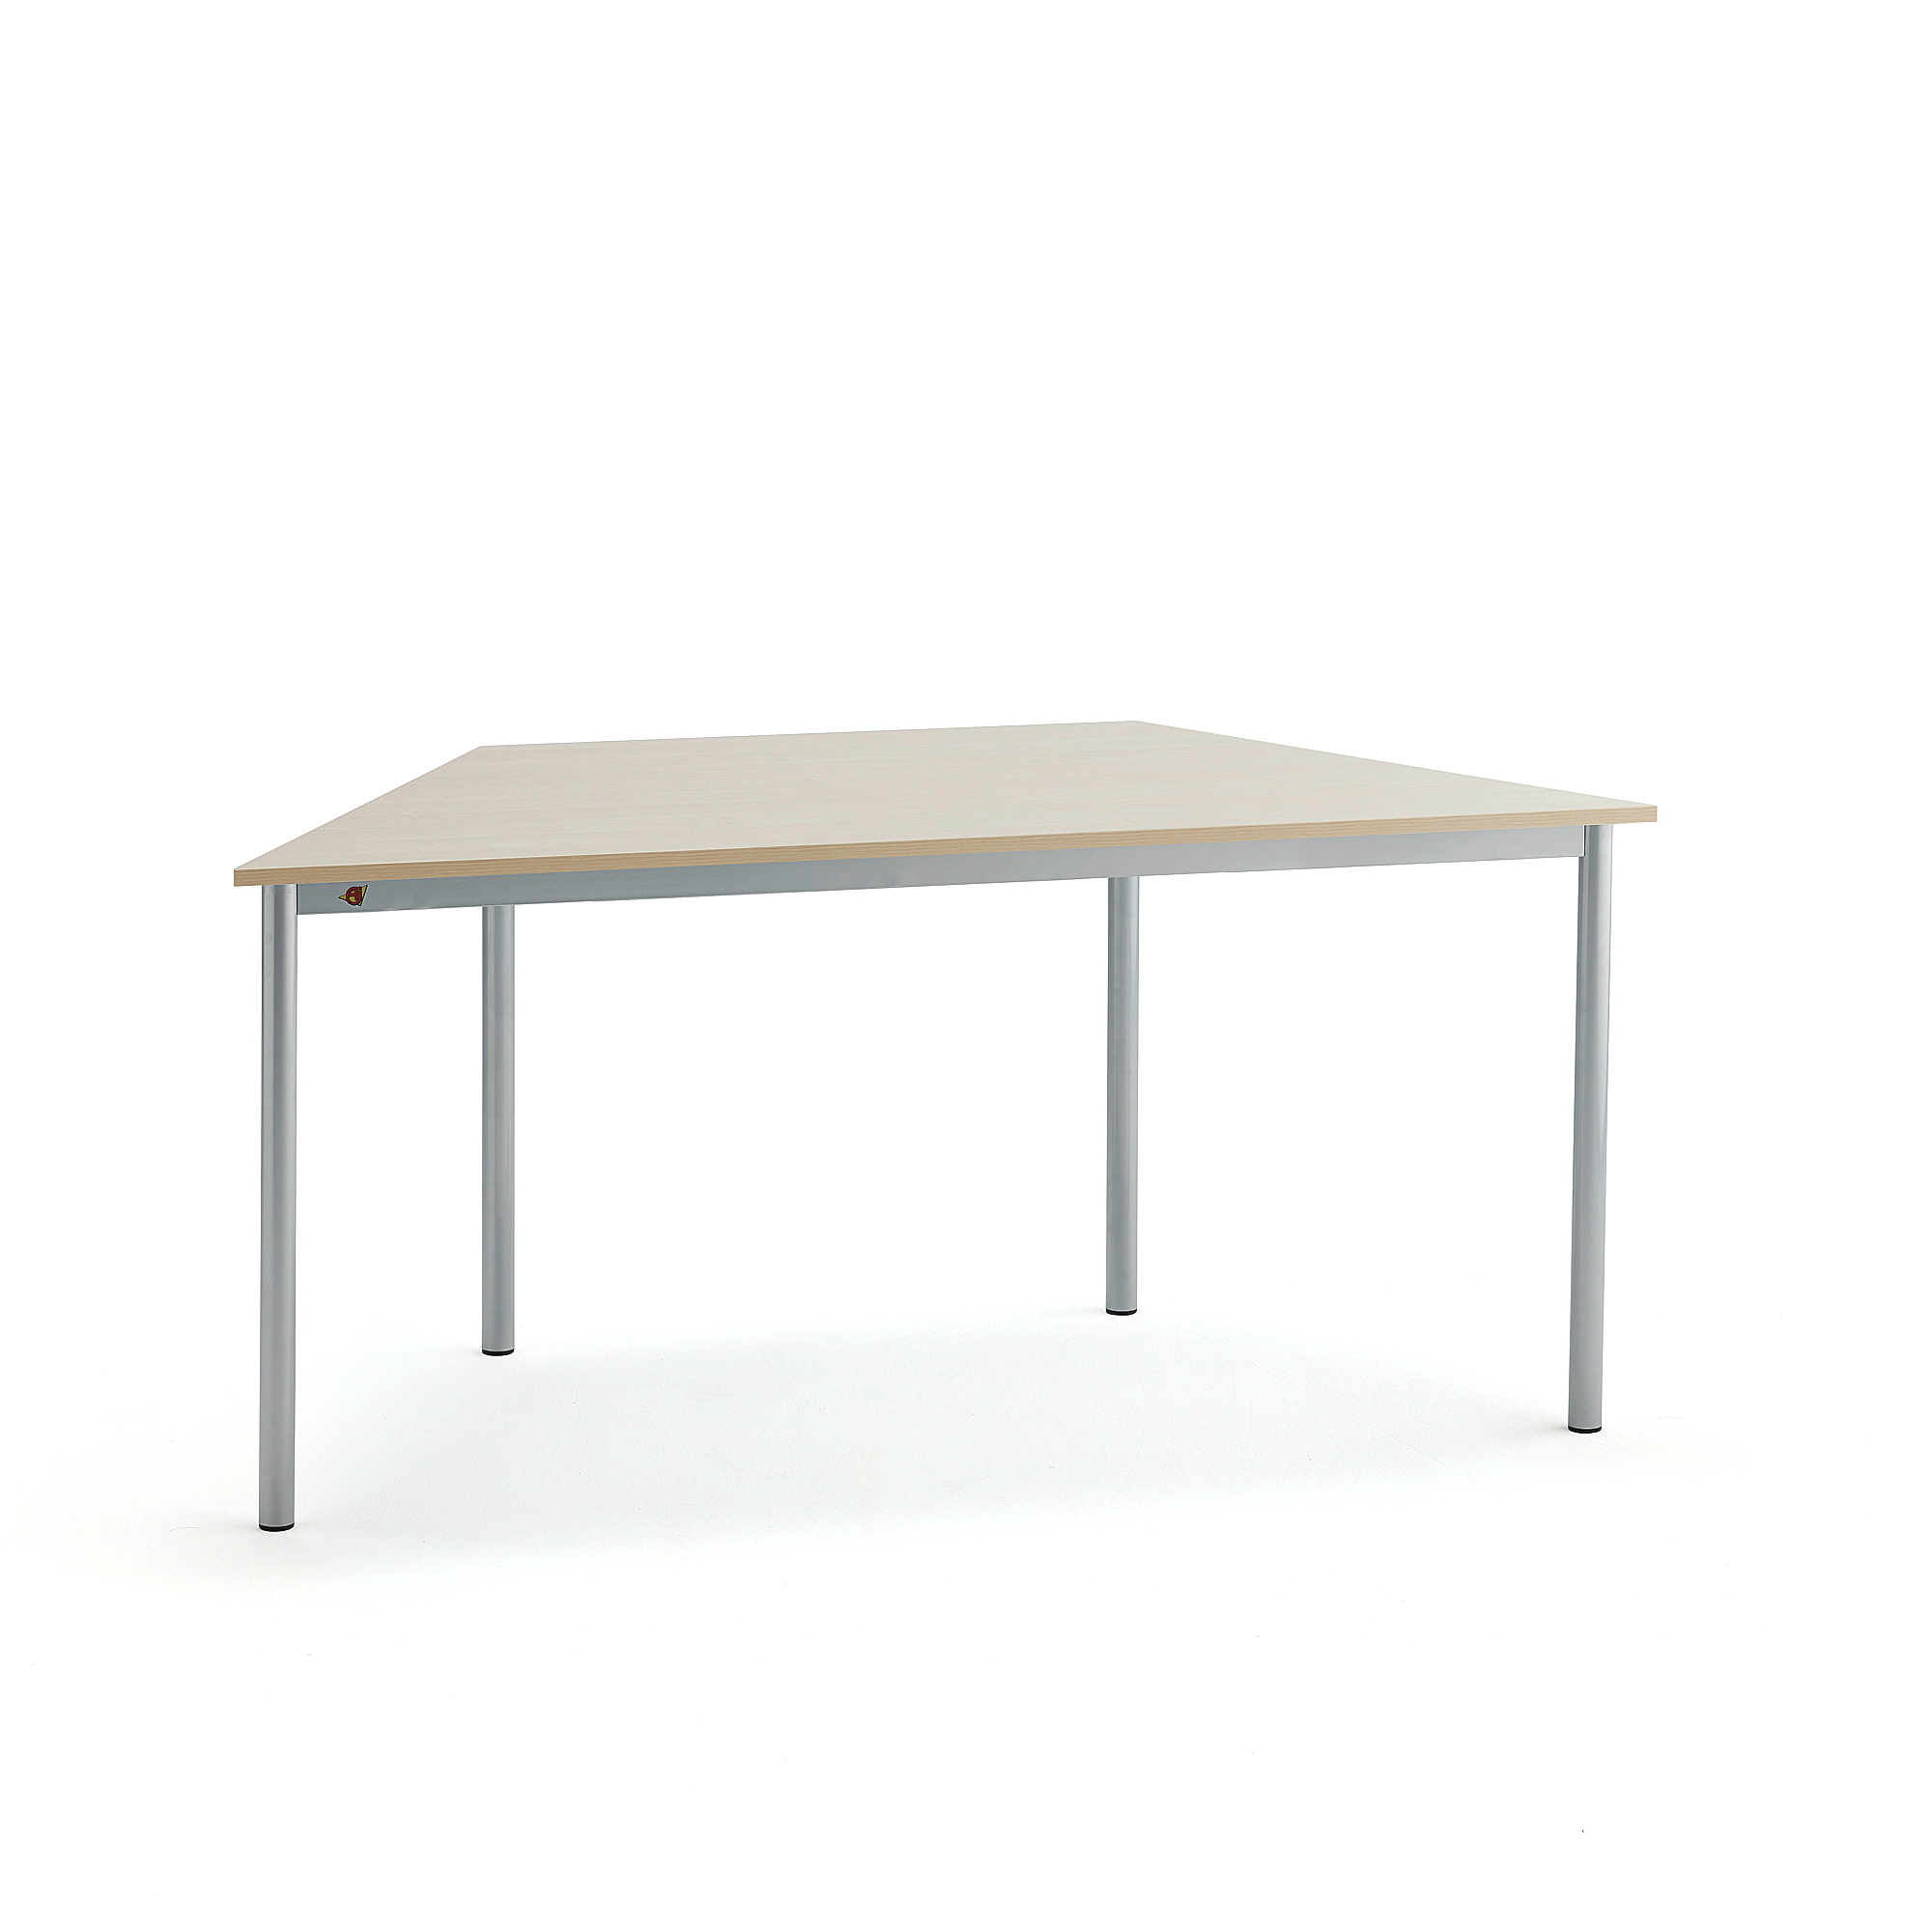 Stůl BORÅS TRAPETS, 1600x800x720 mm, stříbrné nohy, HPL deska, šedá